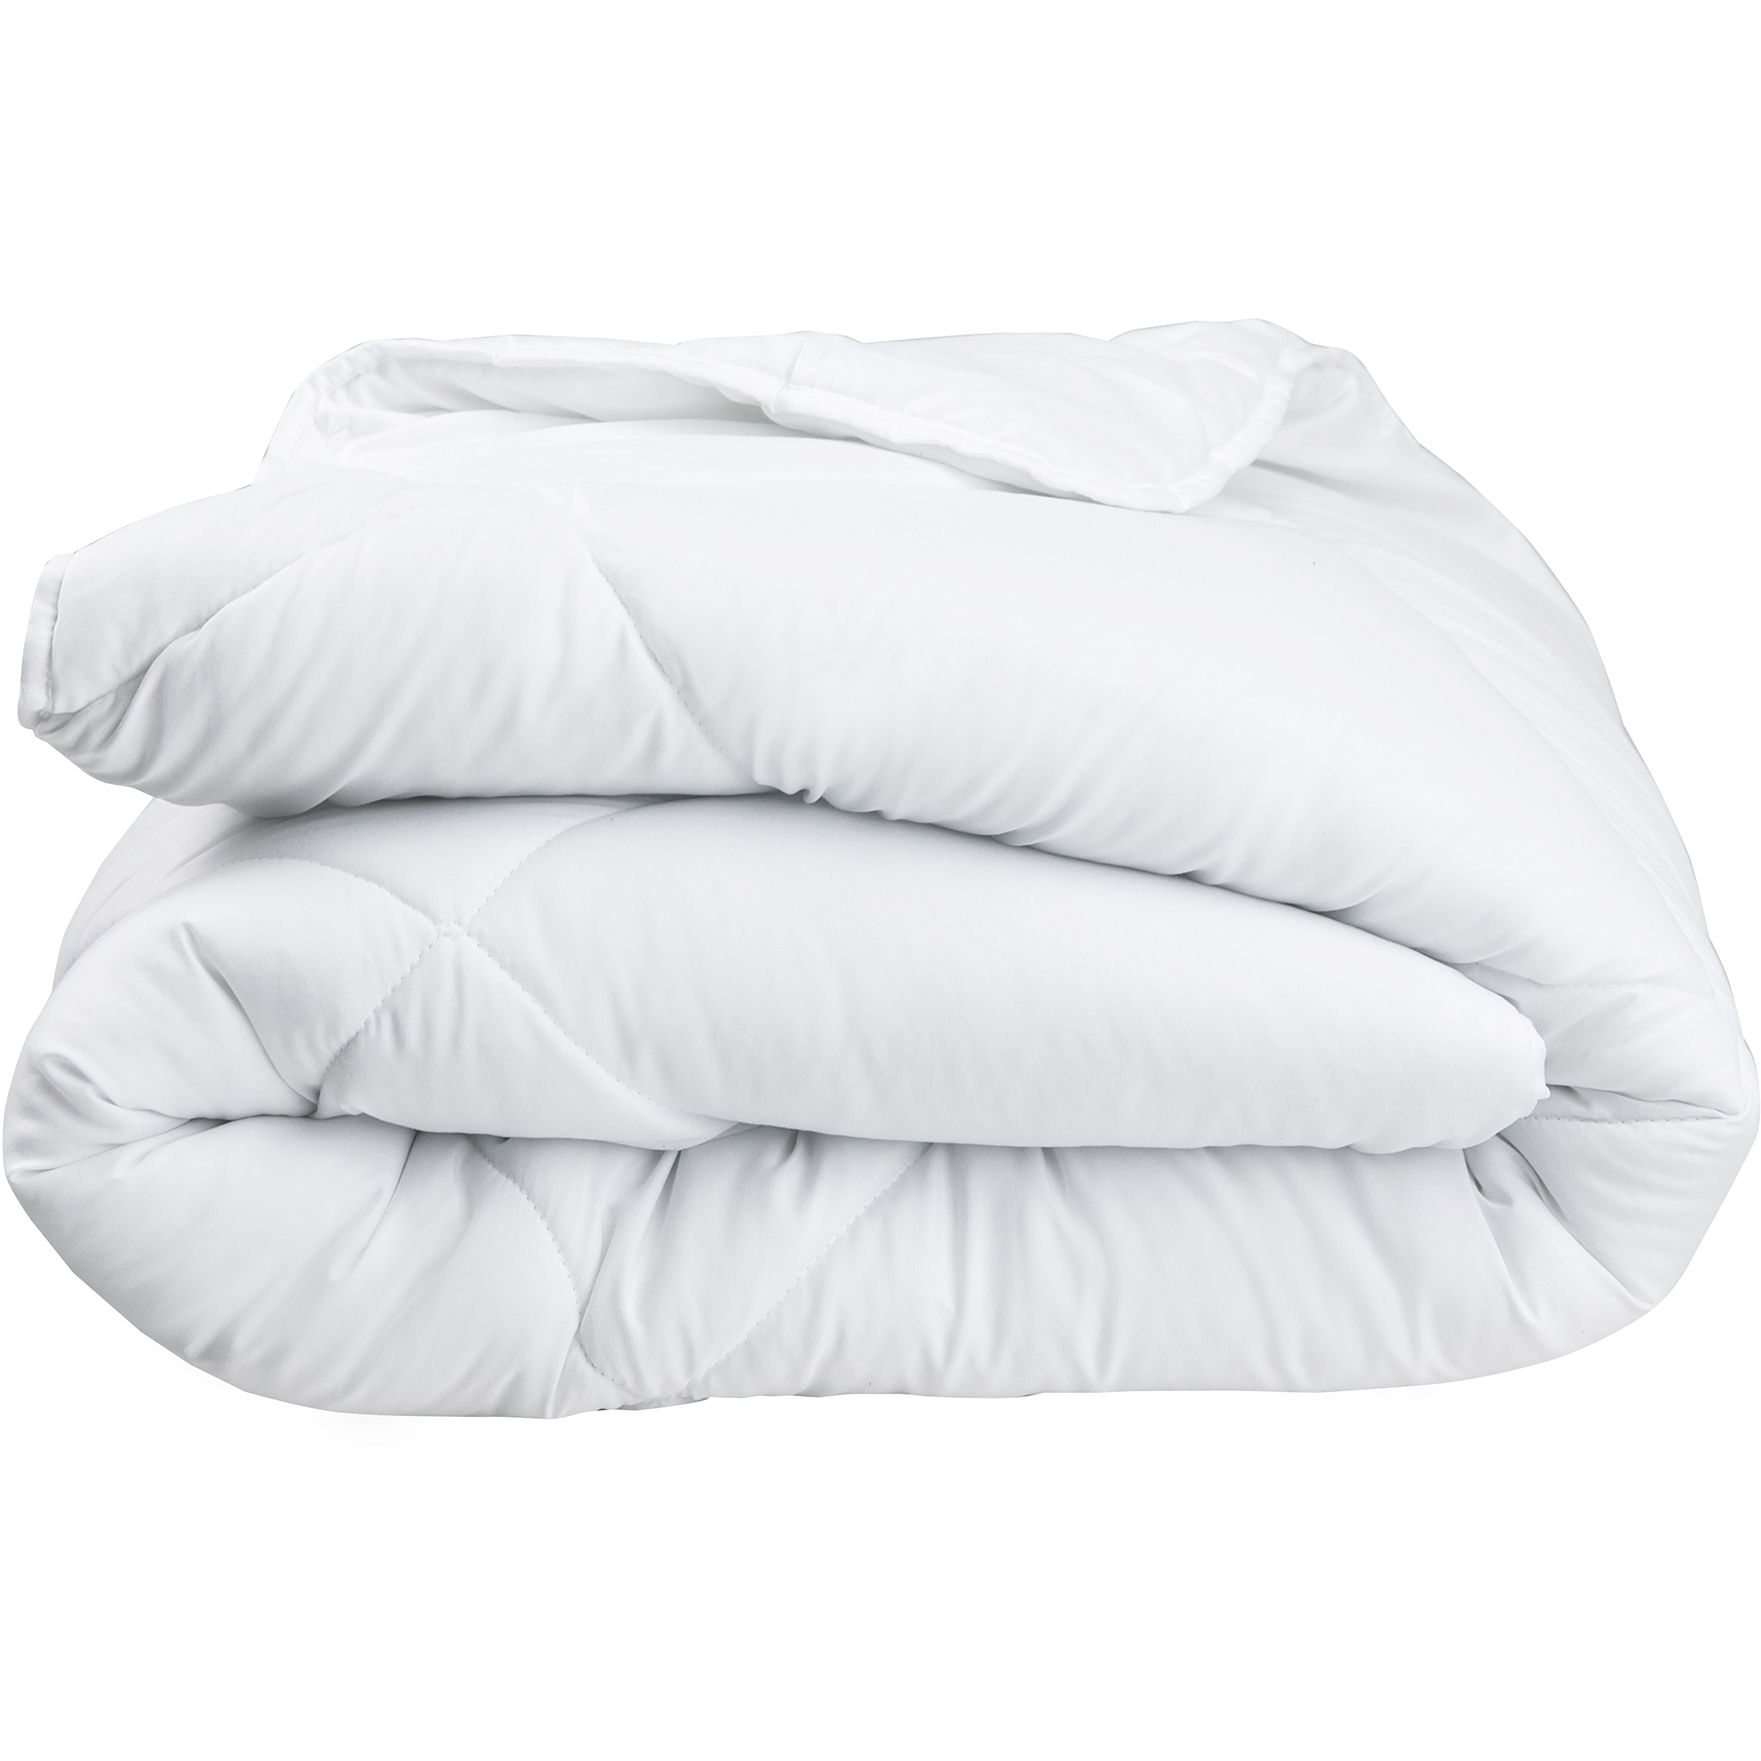 Одеяло ТЕП White Comfort 140x205 белое (1-02566_00000) - фото 1